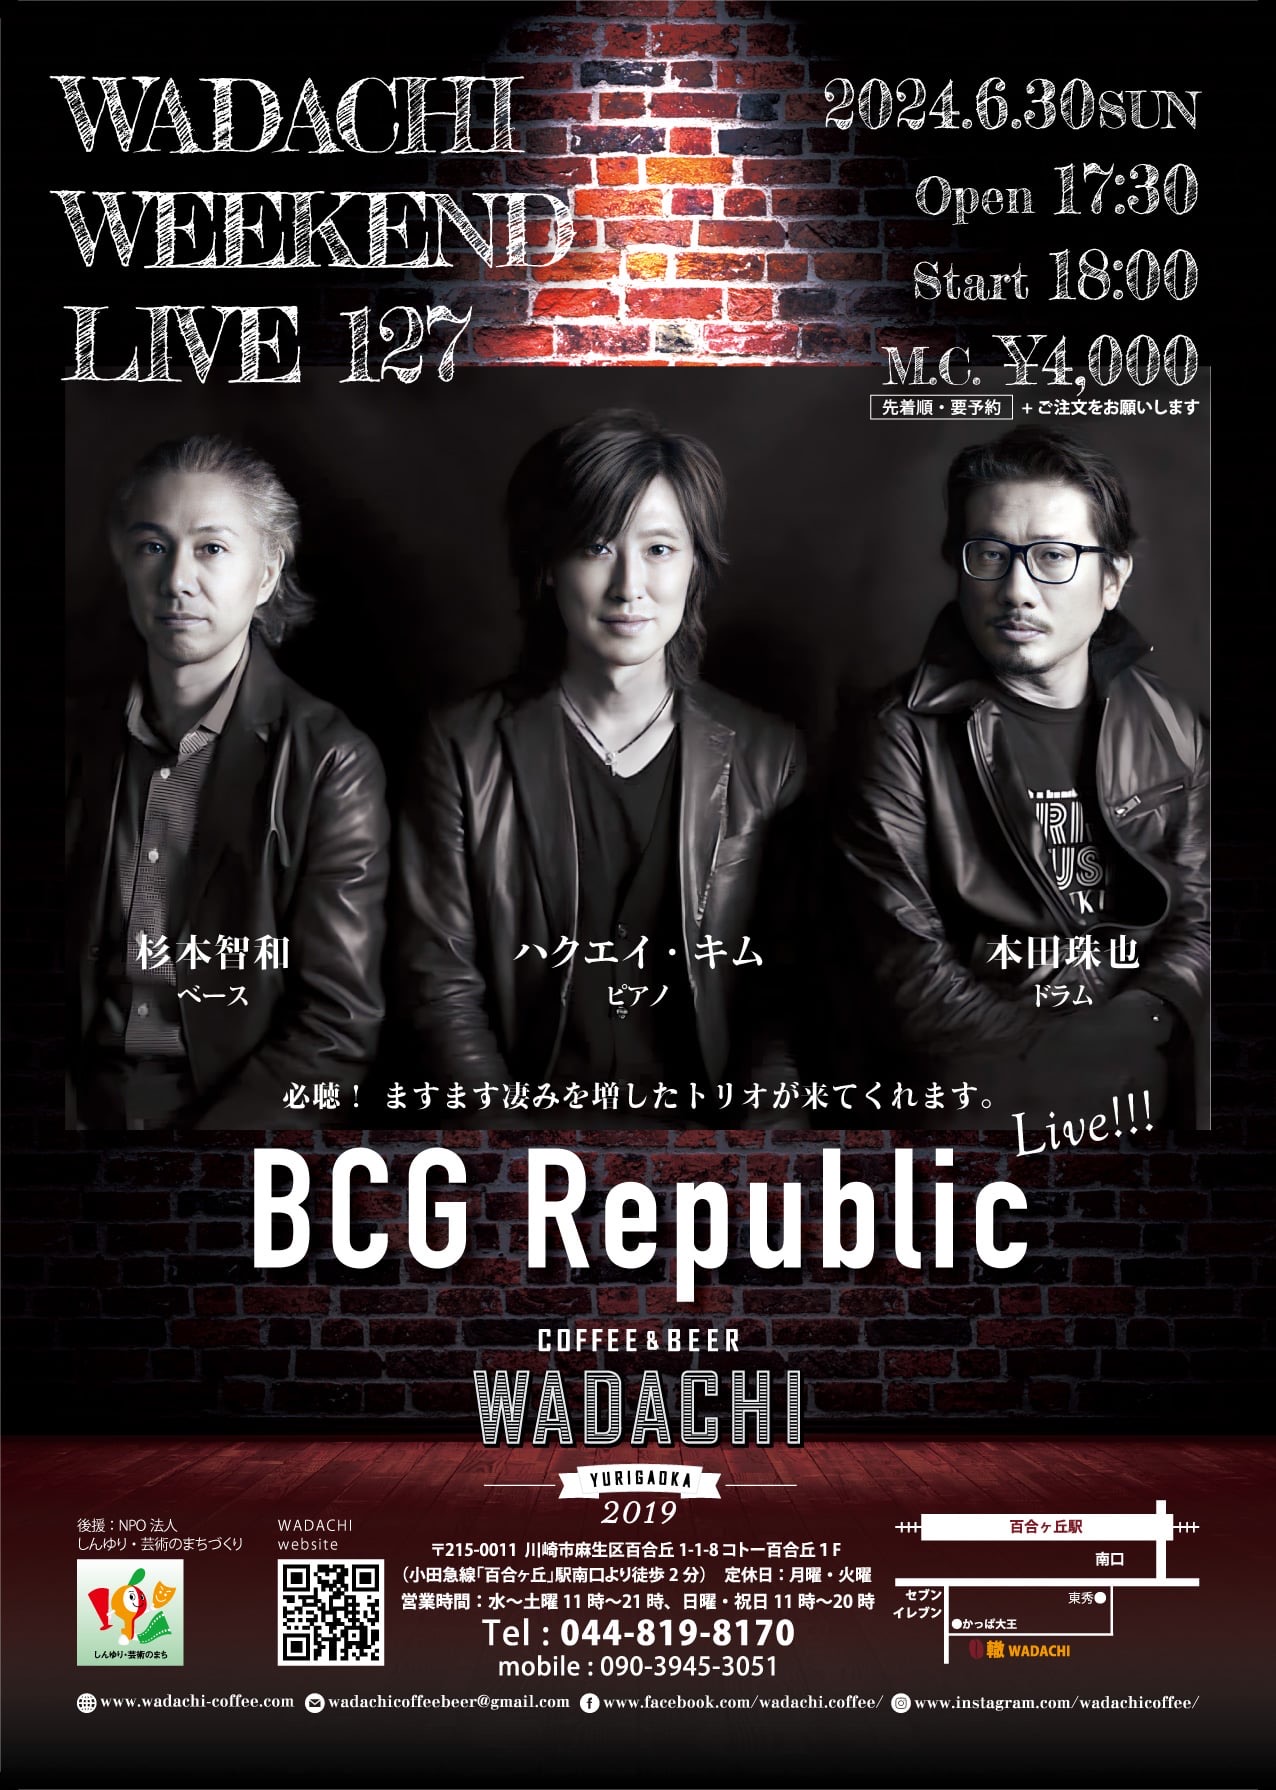 今日のイベント【6月30日】Wadachi Weekend Live 127 BCG Republic Live !!